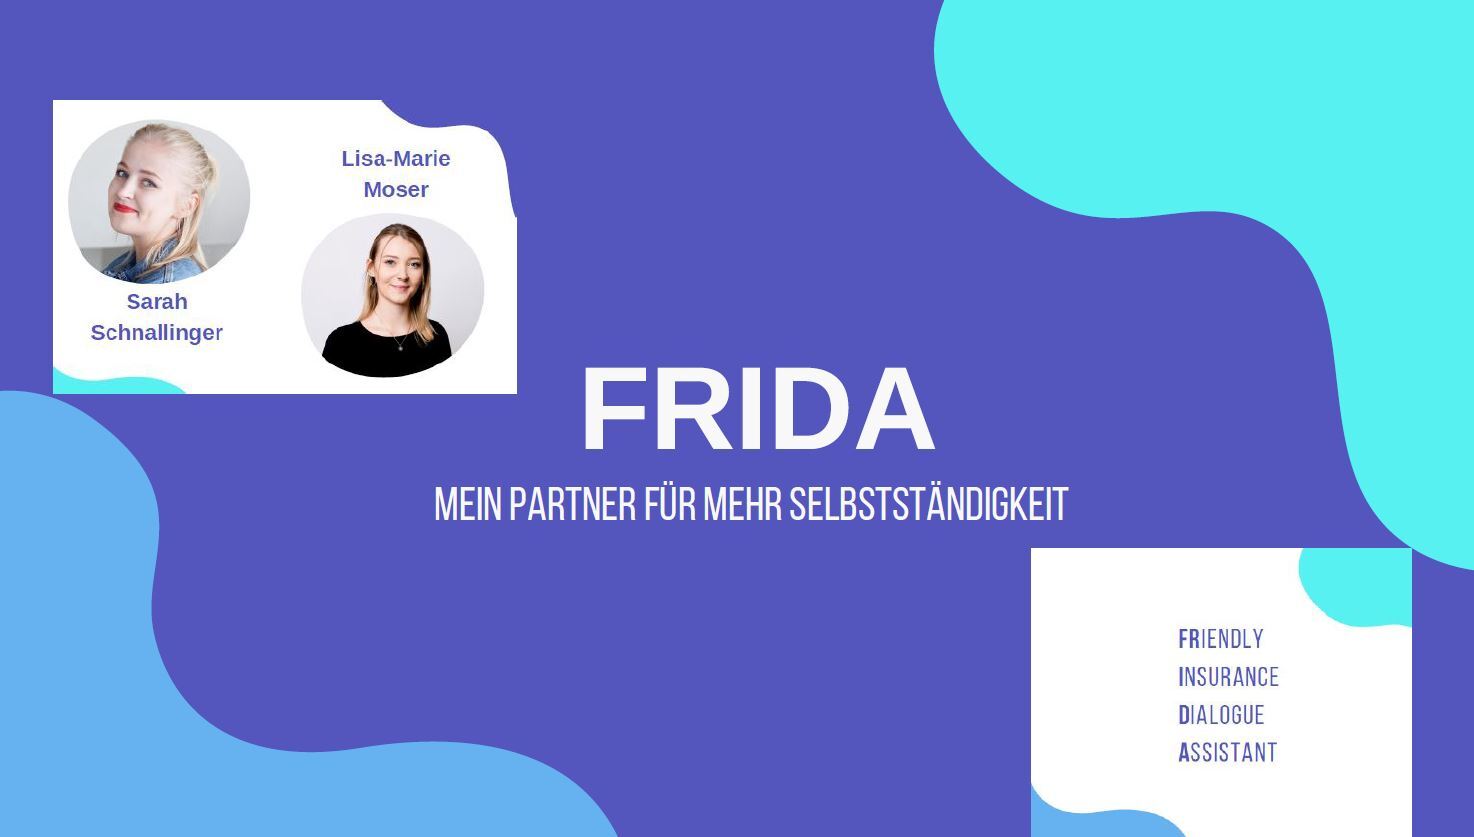 Poster  mit Projektnamen "FRIDA". Links oben 2 Personen die in die Kamera blicken